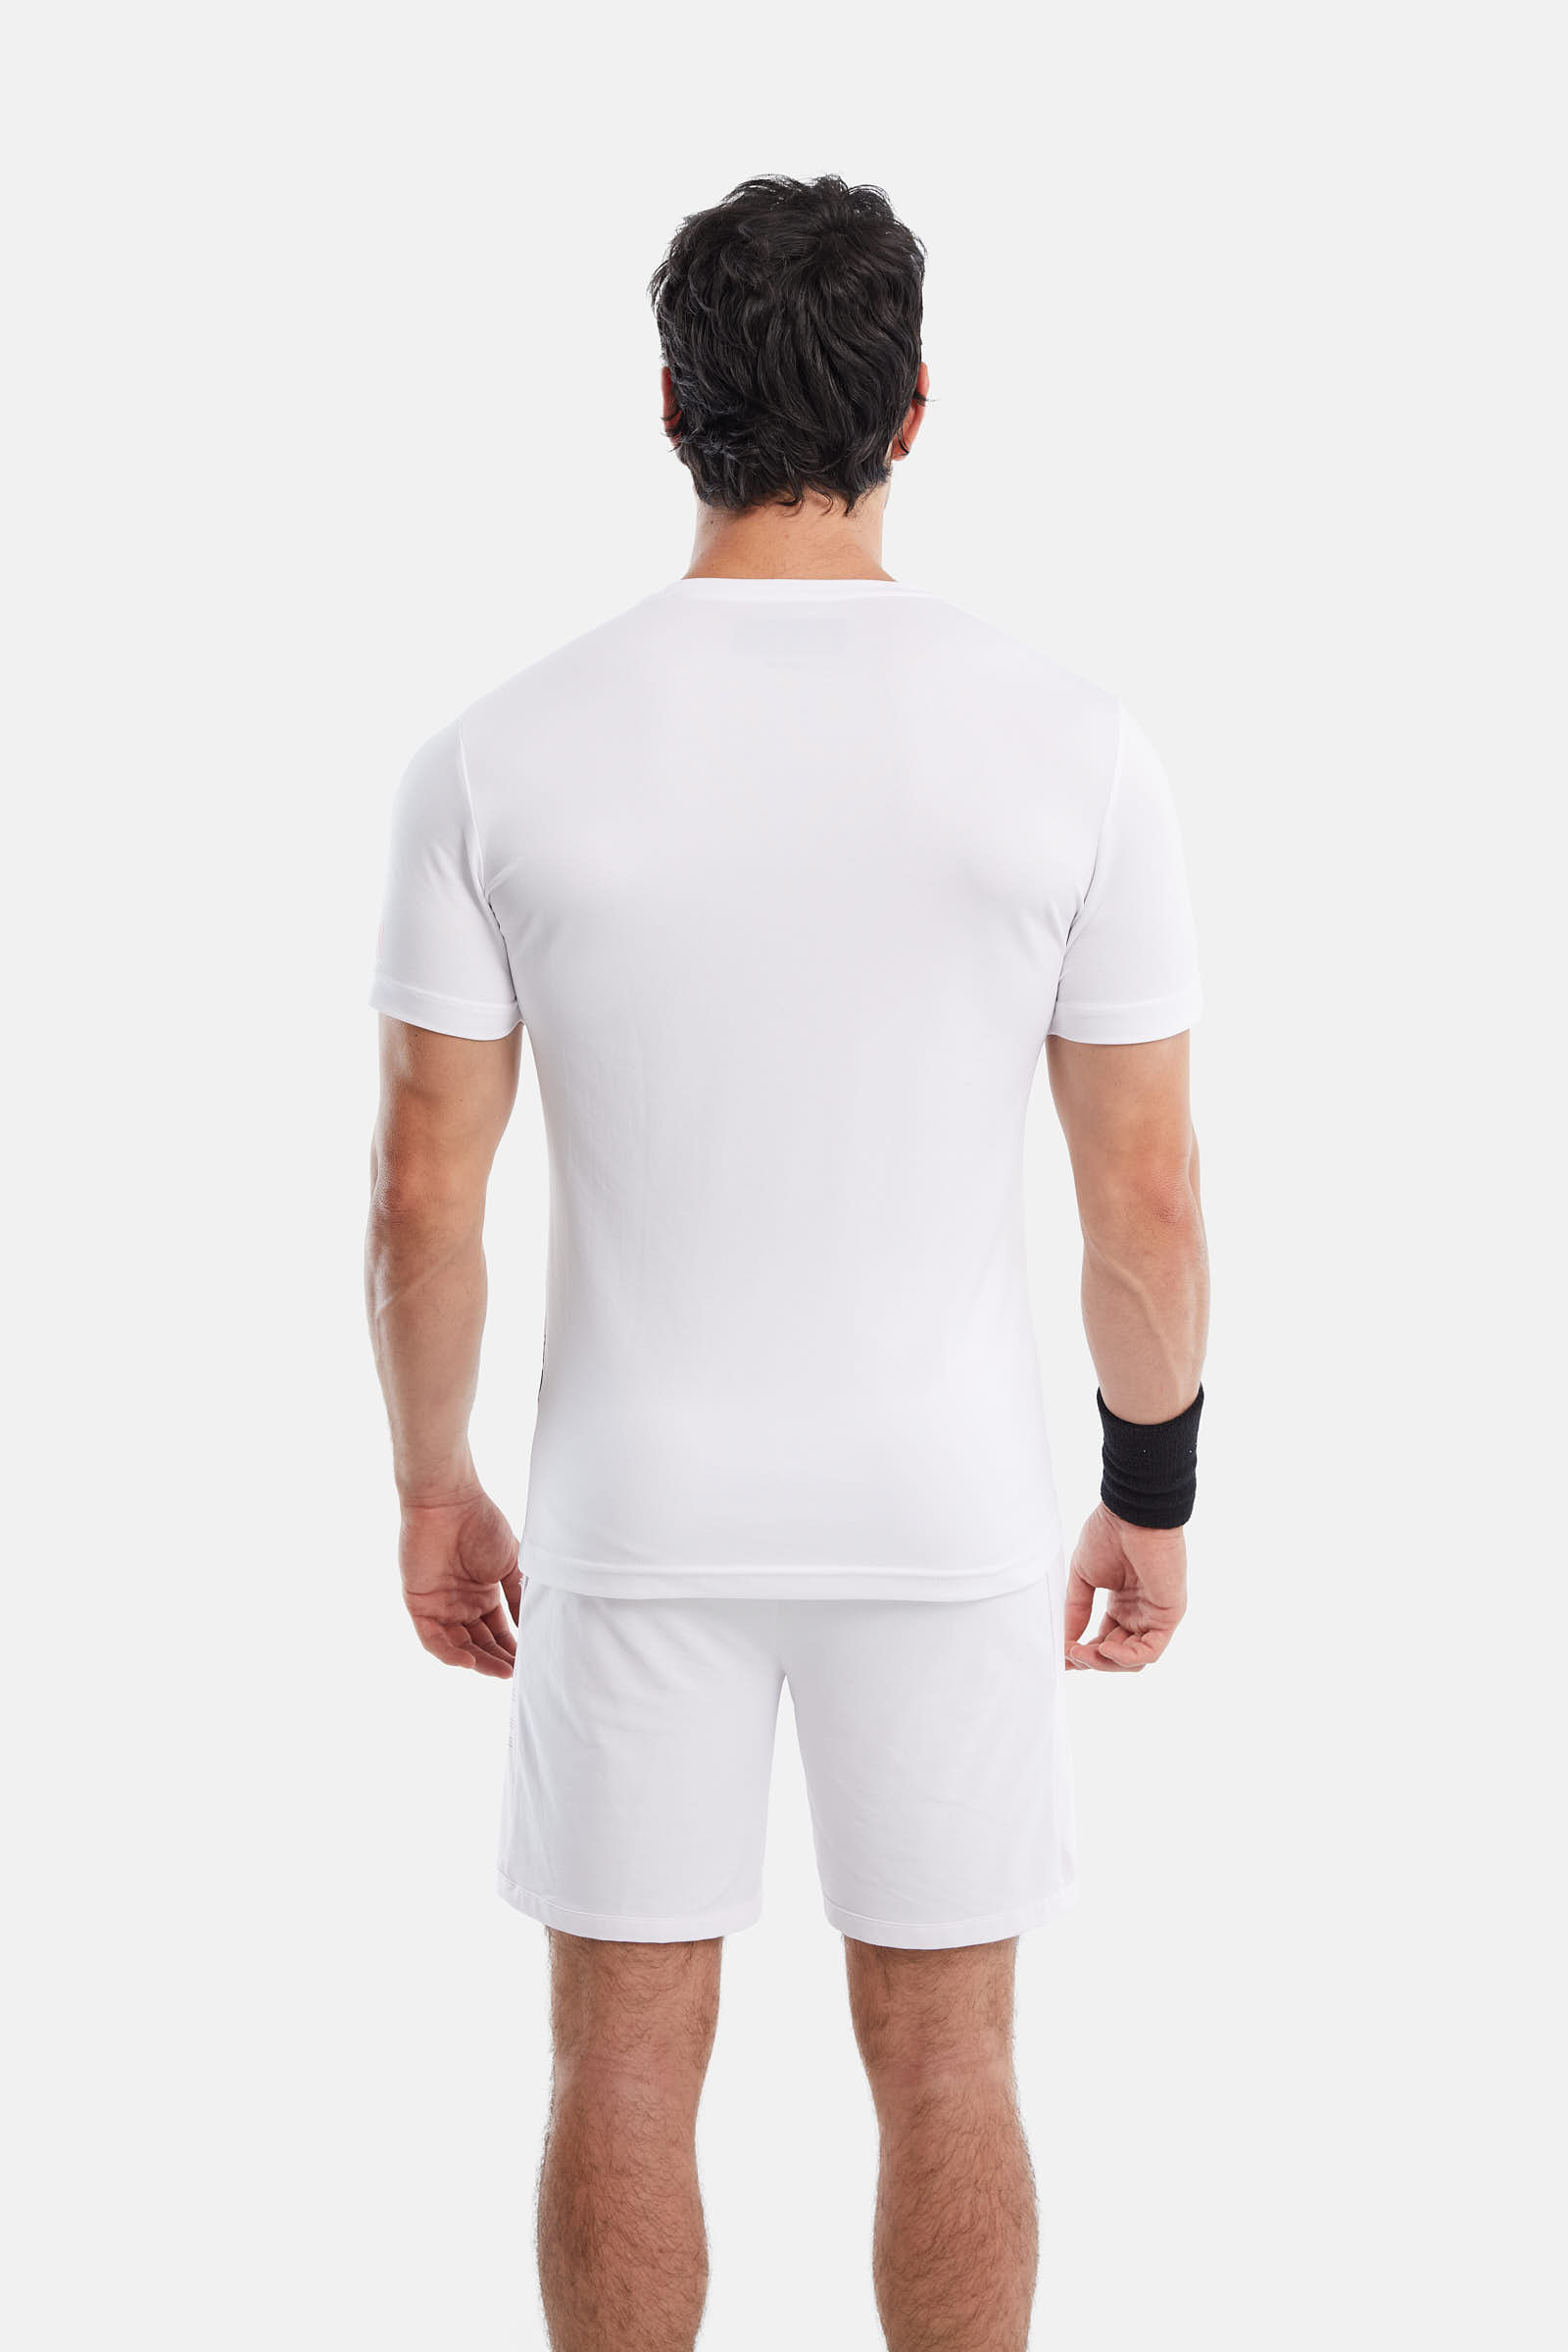 DIRTY SKULL TECH T-SHIRT - WHITE - Hydrogen - Luxury Sportwear